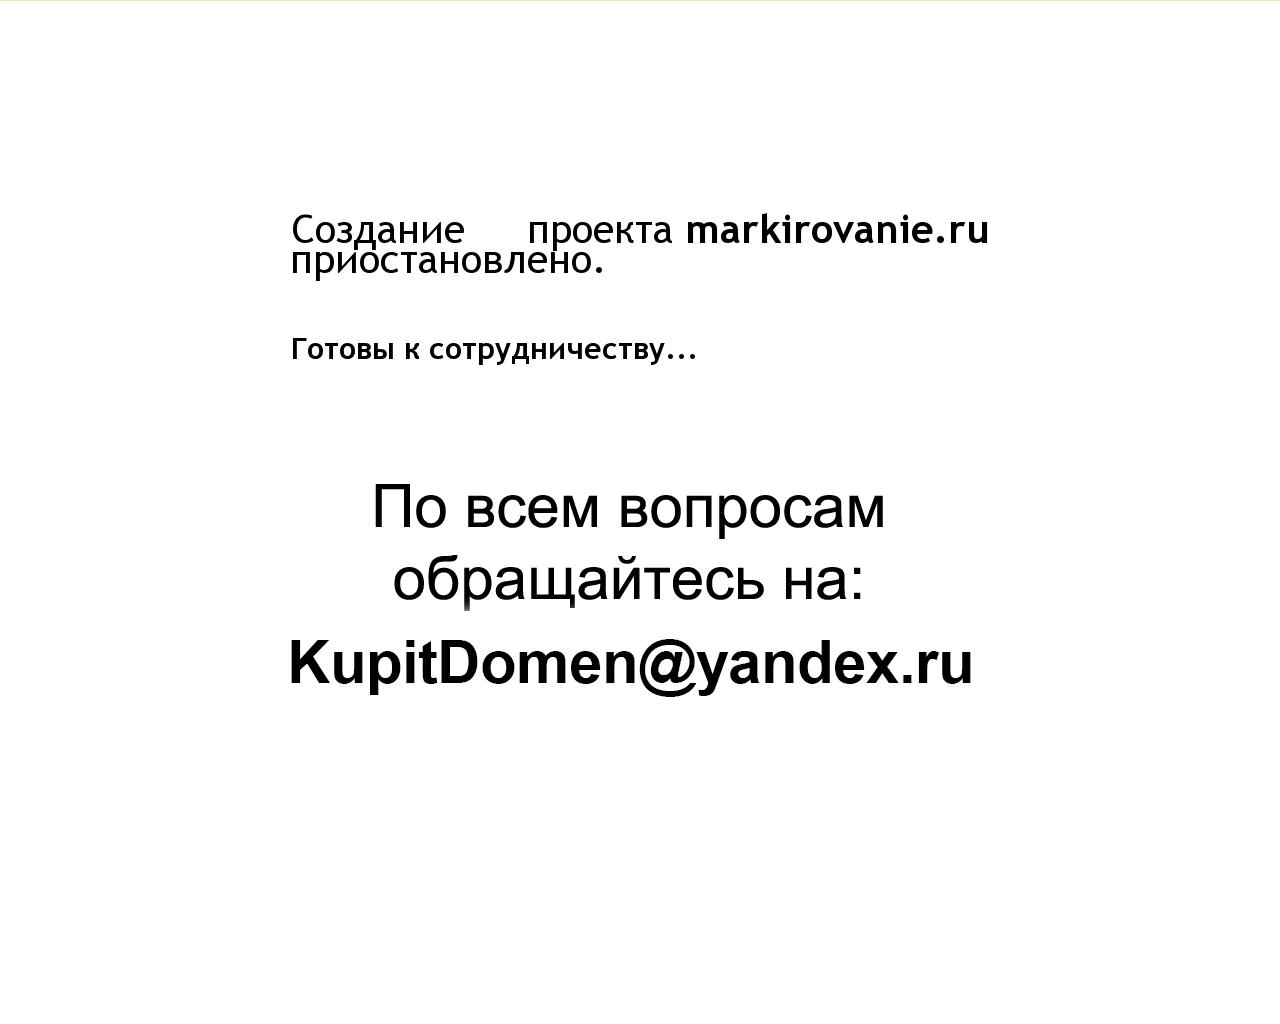 Изображение сайта markirovanie.ru в разрешении 1280x1024